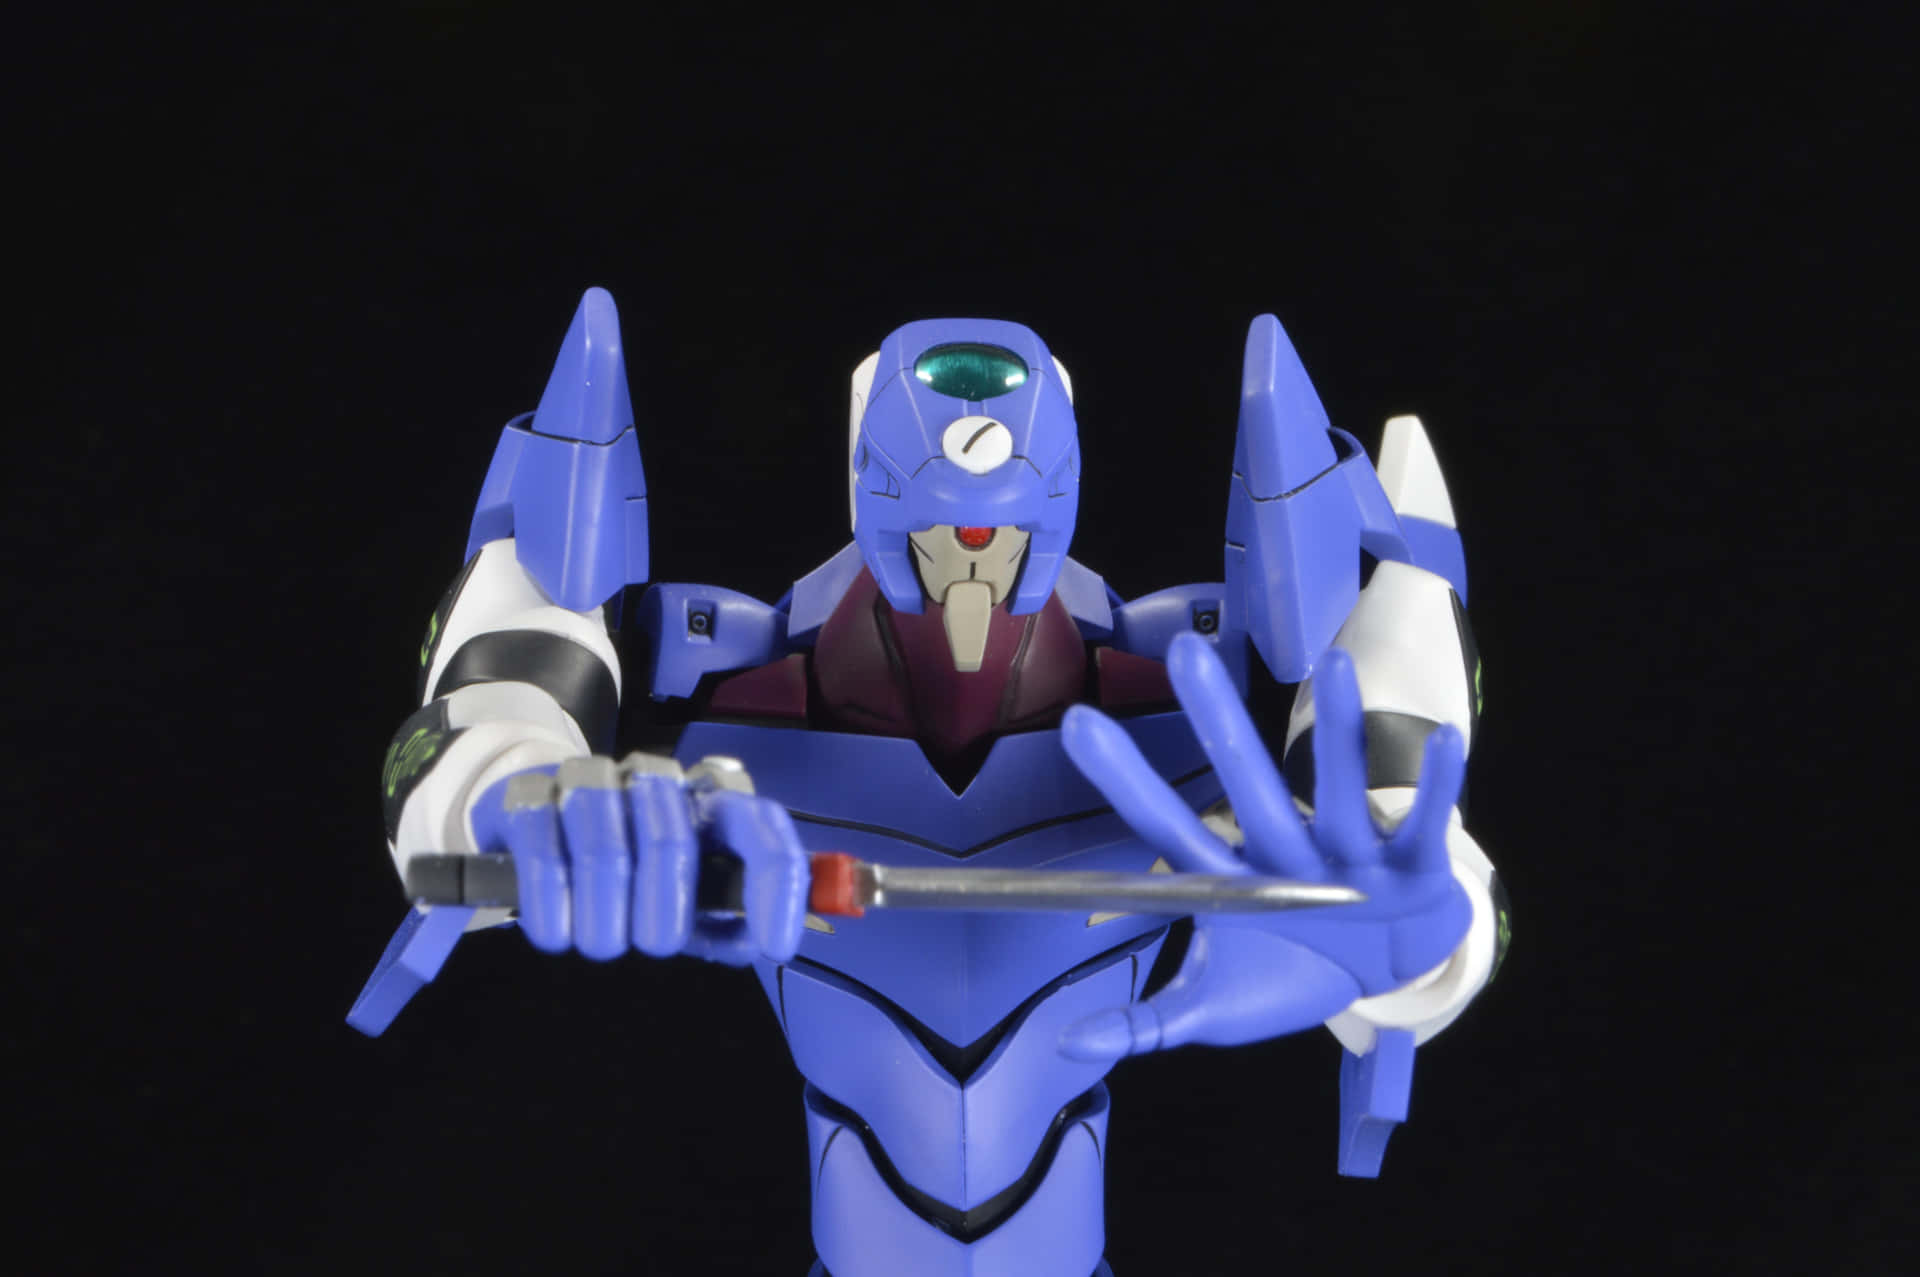 Eva-00 Robot in Action Wallpaper